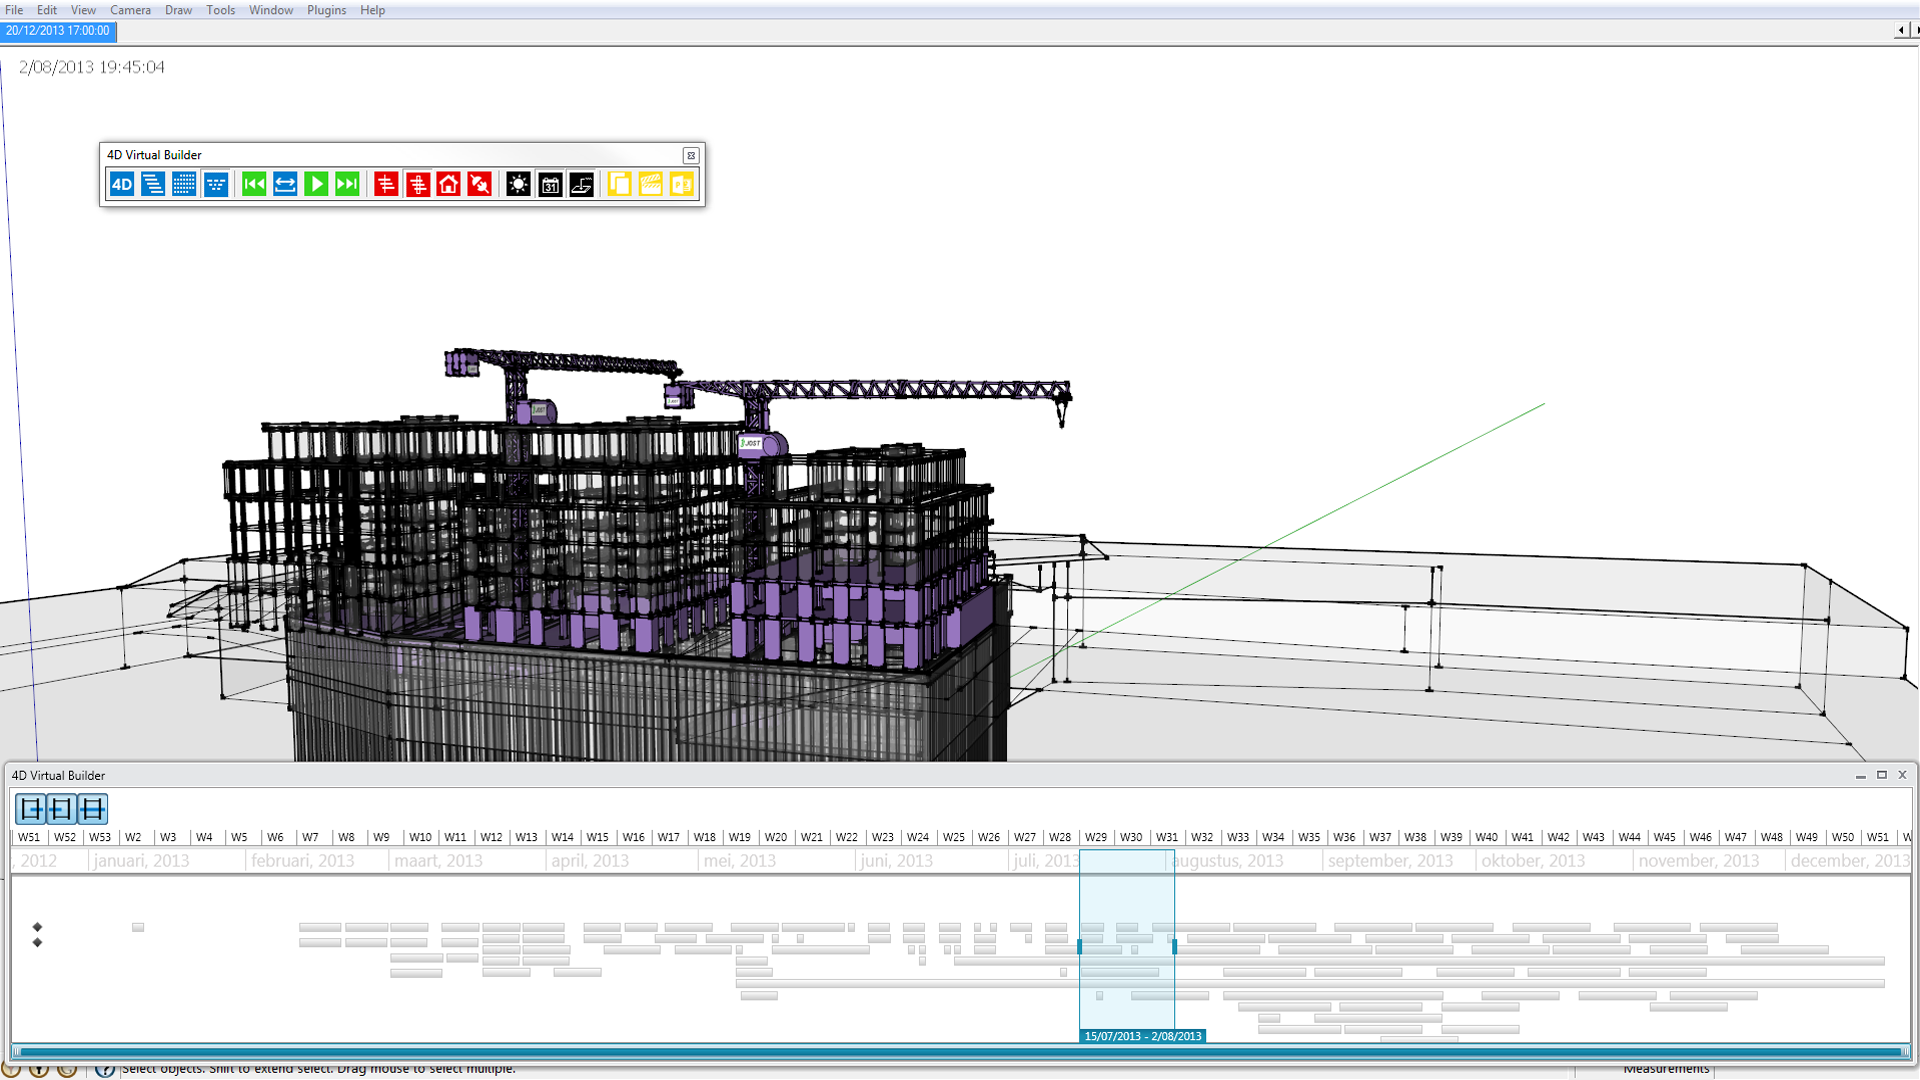 4D Virtual Builder 3.2.14 software screenshot